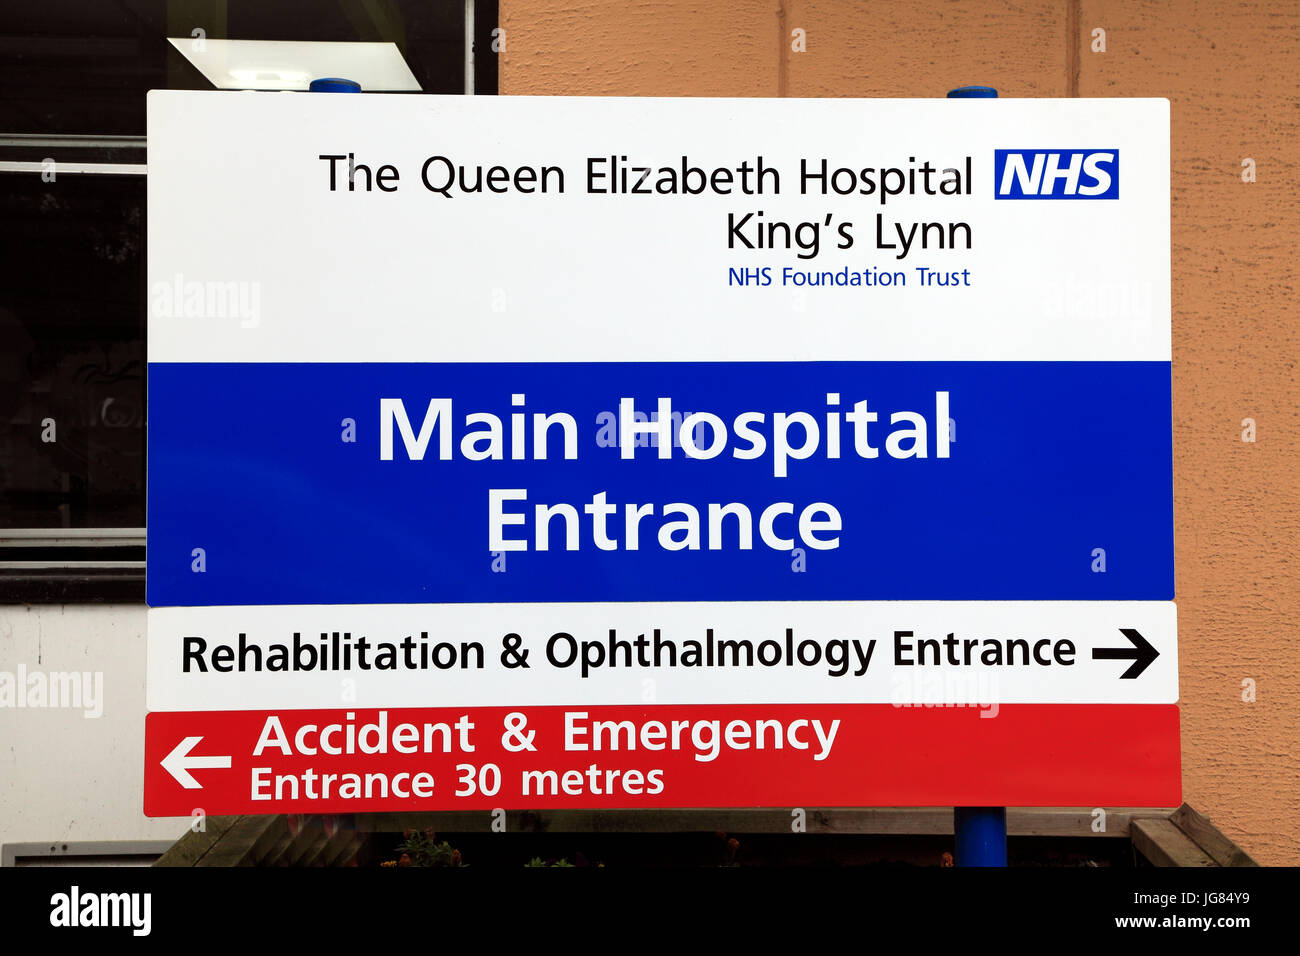 Krankenhaus der Königin-Elizabeth, Kings Lynn, Haupteingang Zeichen, Norfolk, England, Vereinigtes Königreich, englischen NHS Krankenhäuser Stockfoto